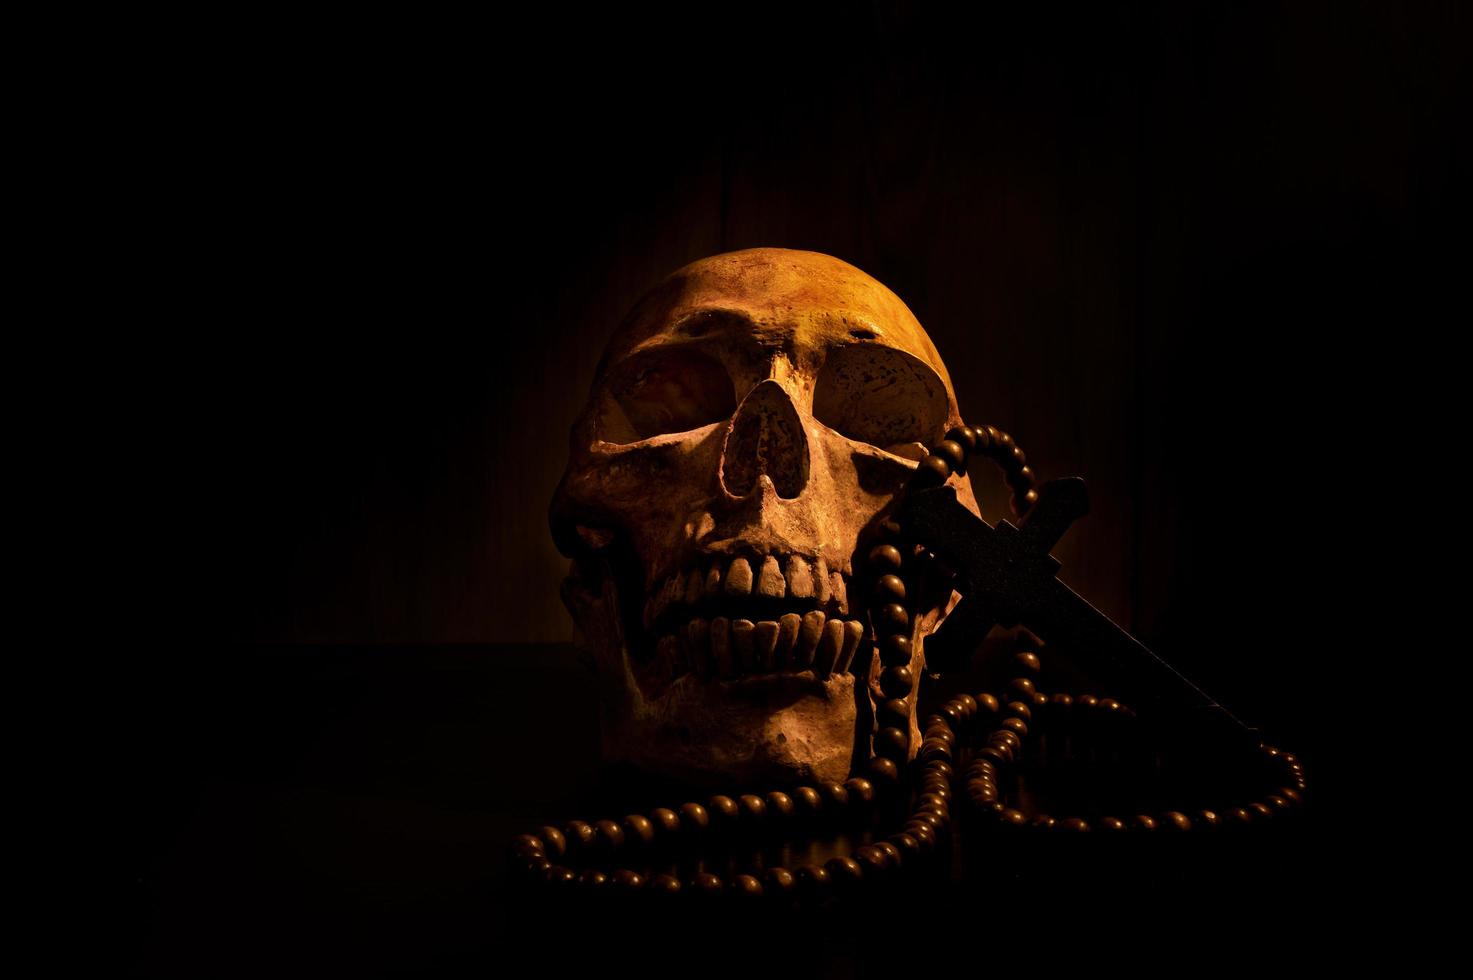 stillevenkunst van een menselijke schedel en kraal op een zwarte achtergrond foto